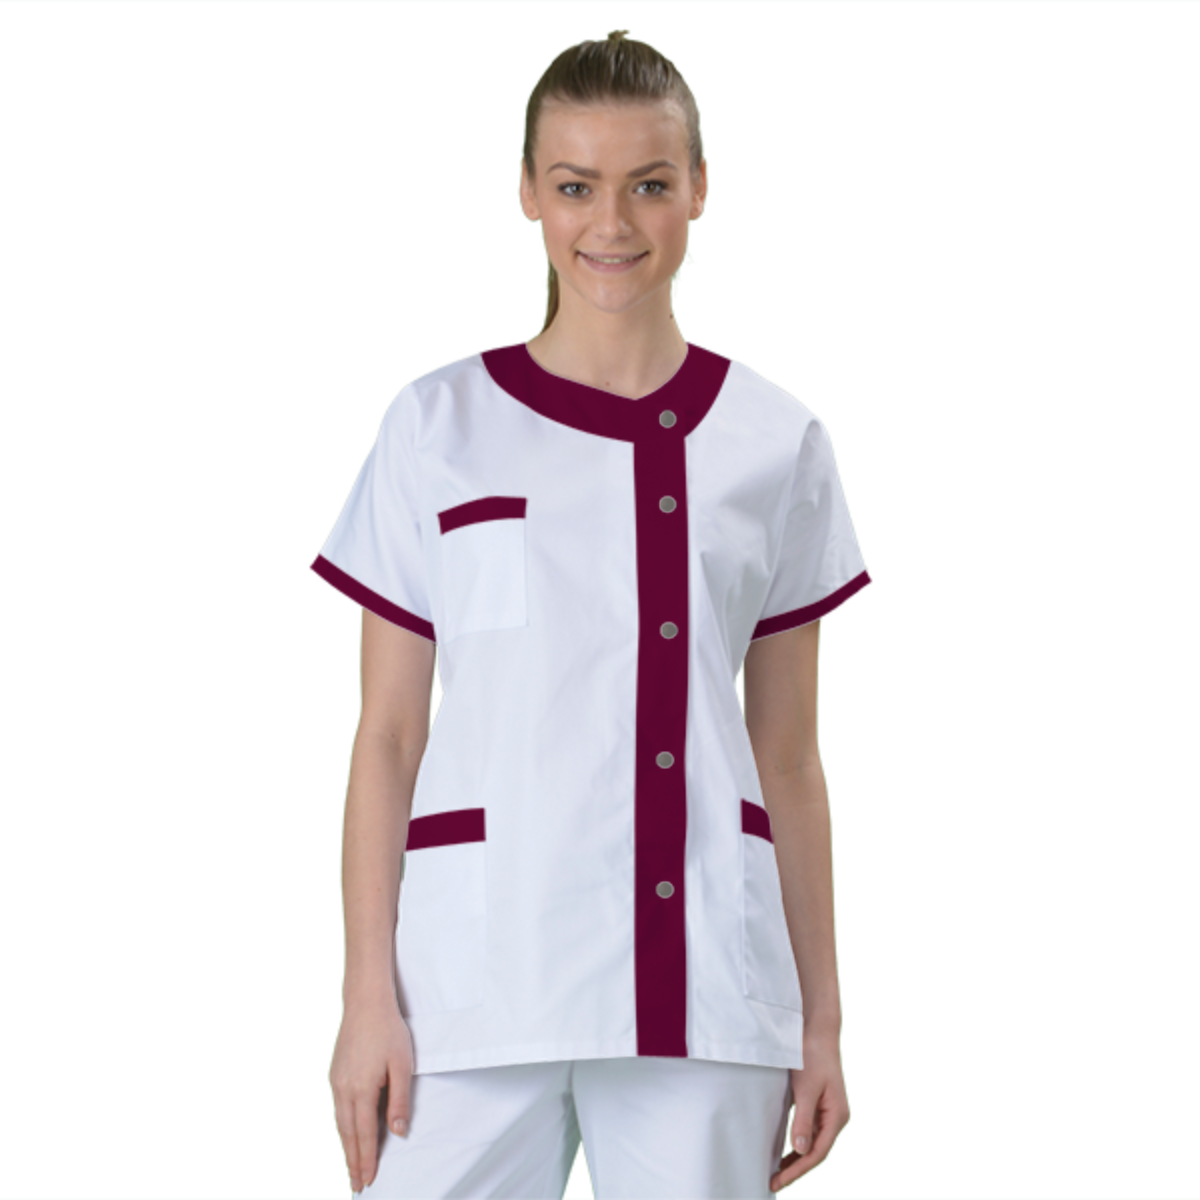 blouse-medicale-col-carre-a-personnaliser acheté - par Claire - le 04-01-2021